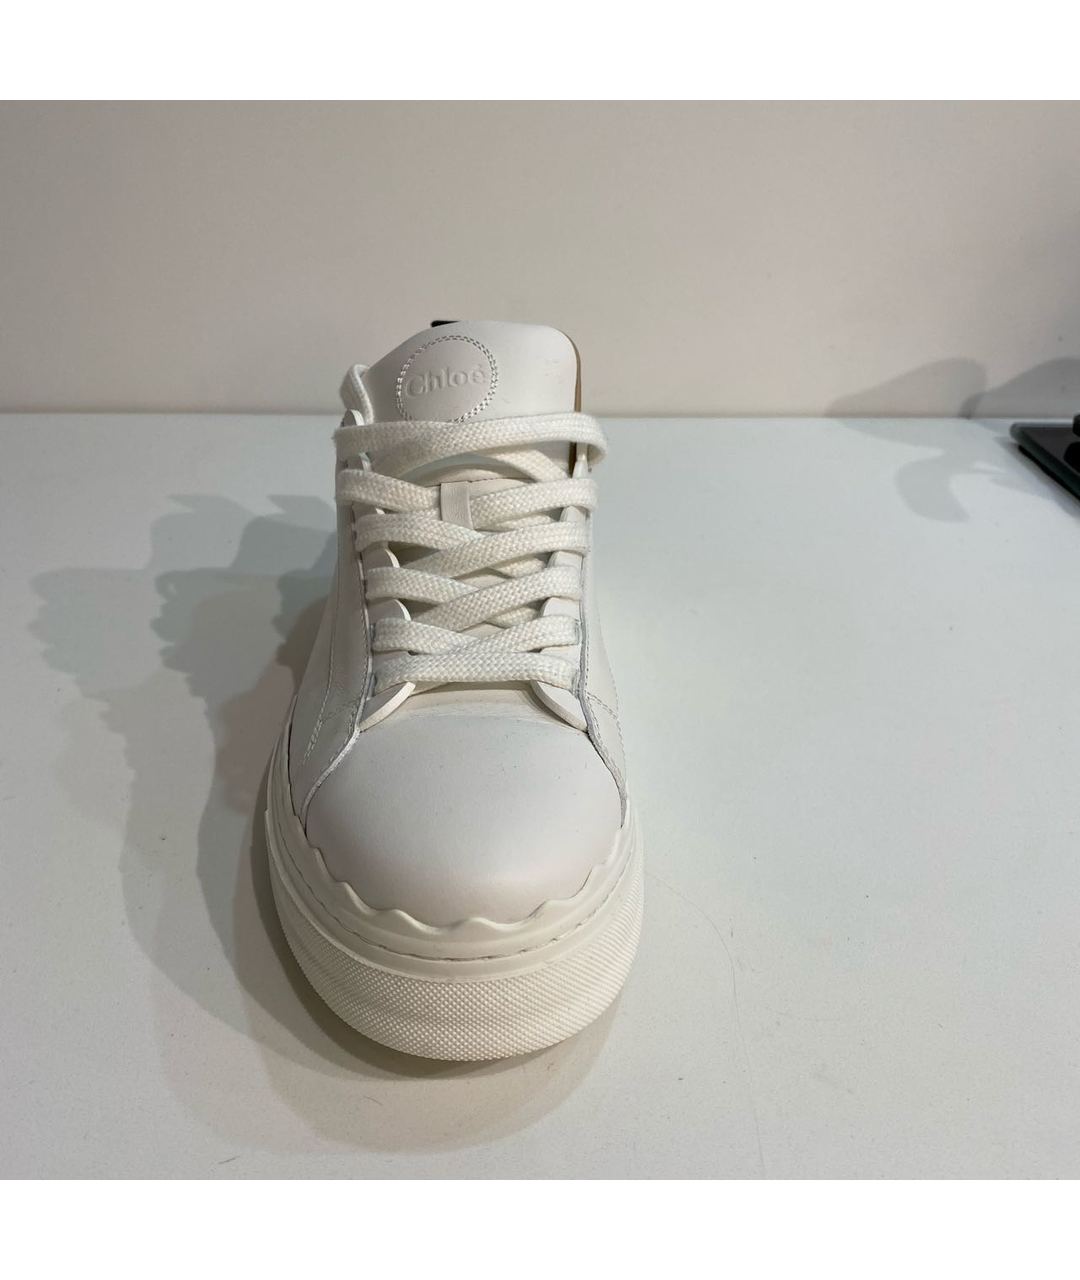 CHLOE Белые кожаные кроссовки, фото 2